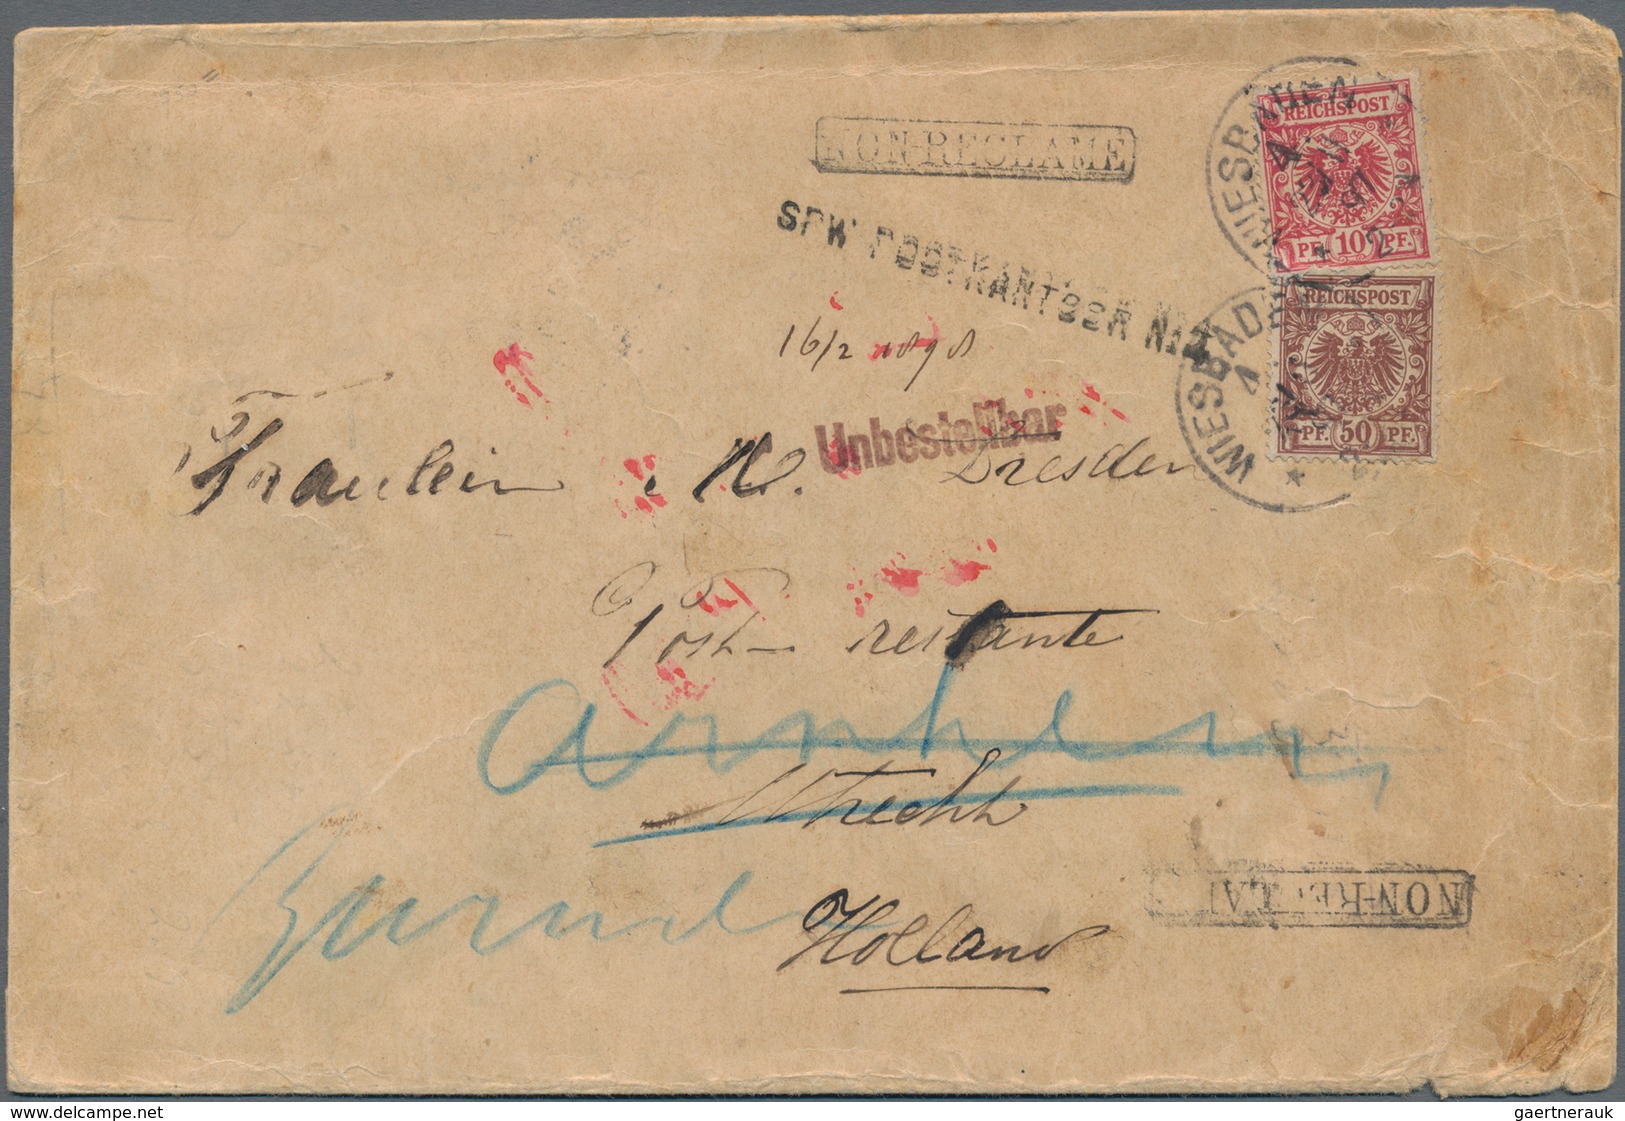 Niederlande - Stempel: 1897, "SPW POSTKANTOOR No. 4", Single Line Handstamp On Cover From Germany, F - Poststempel